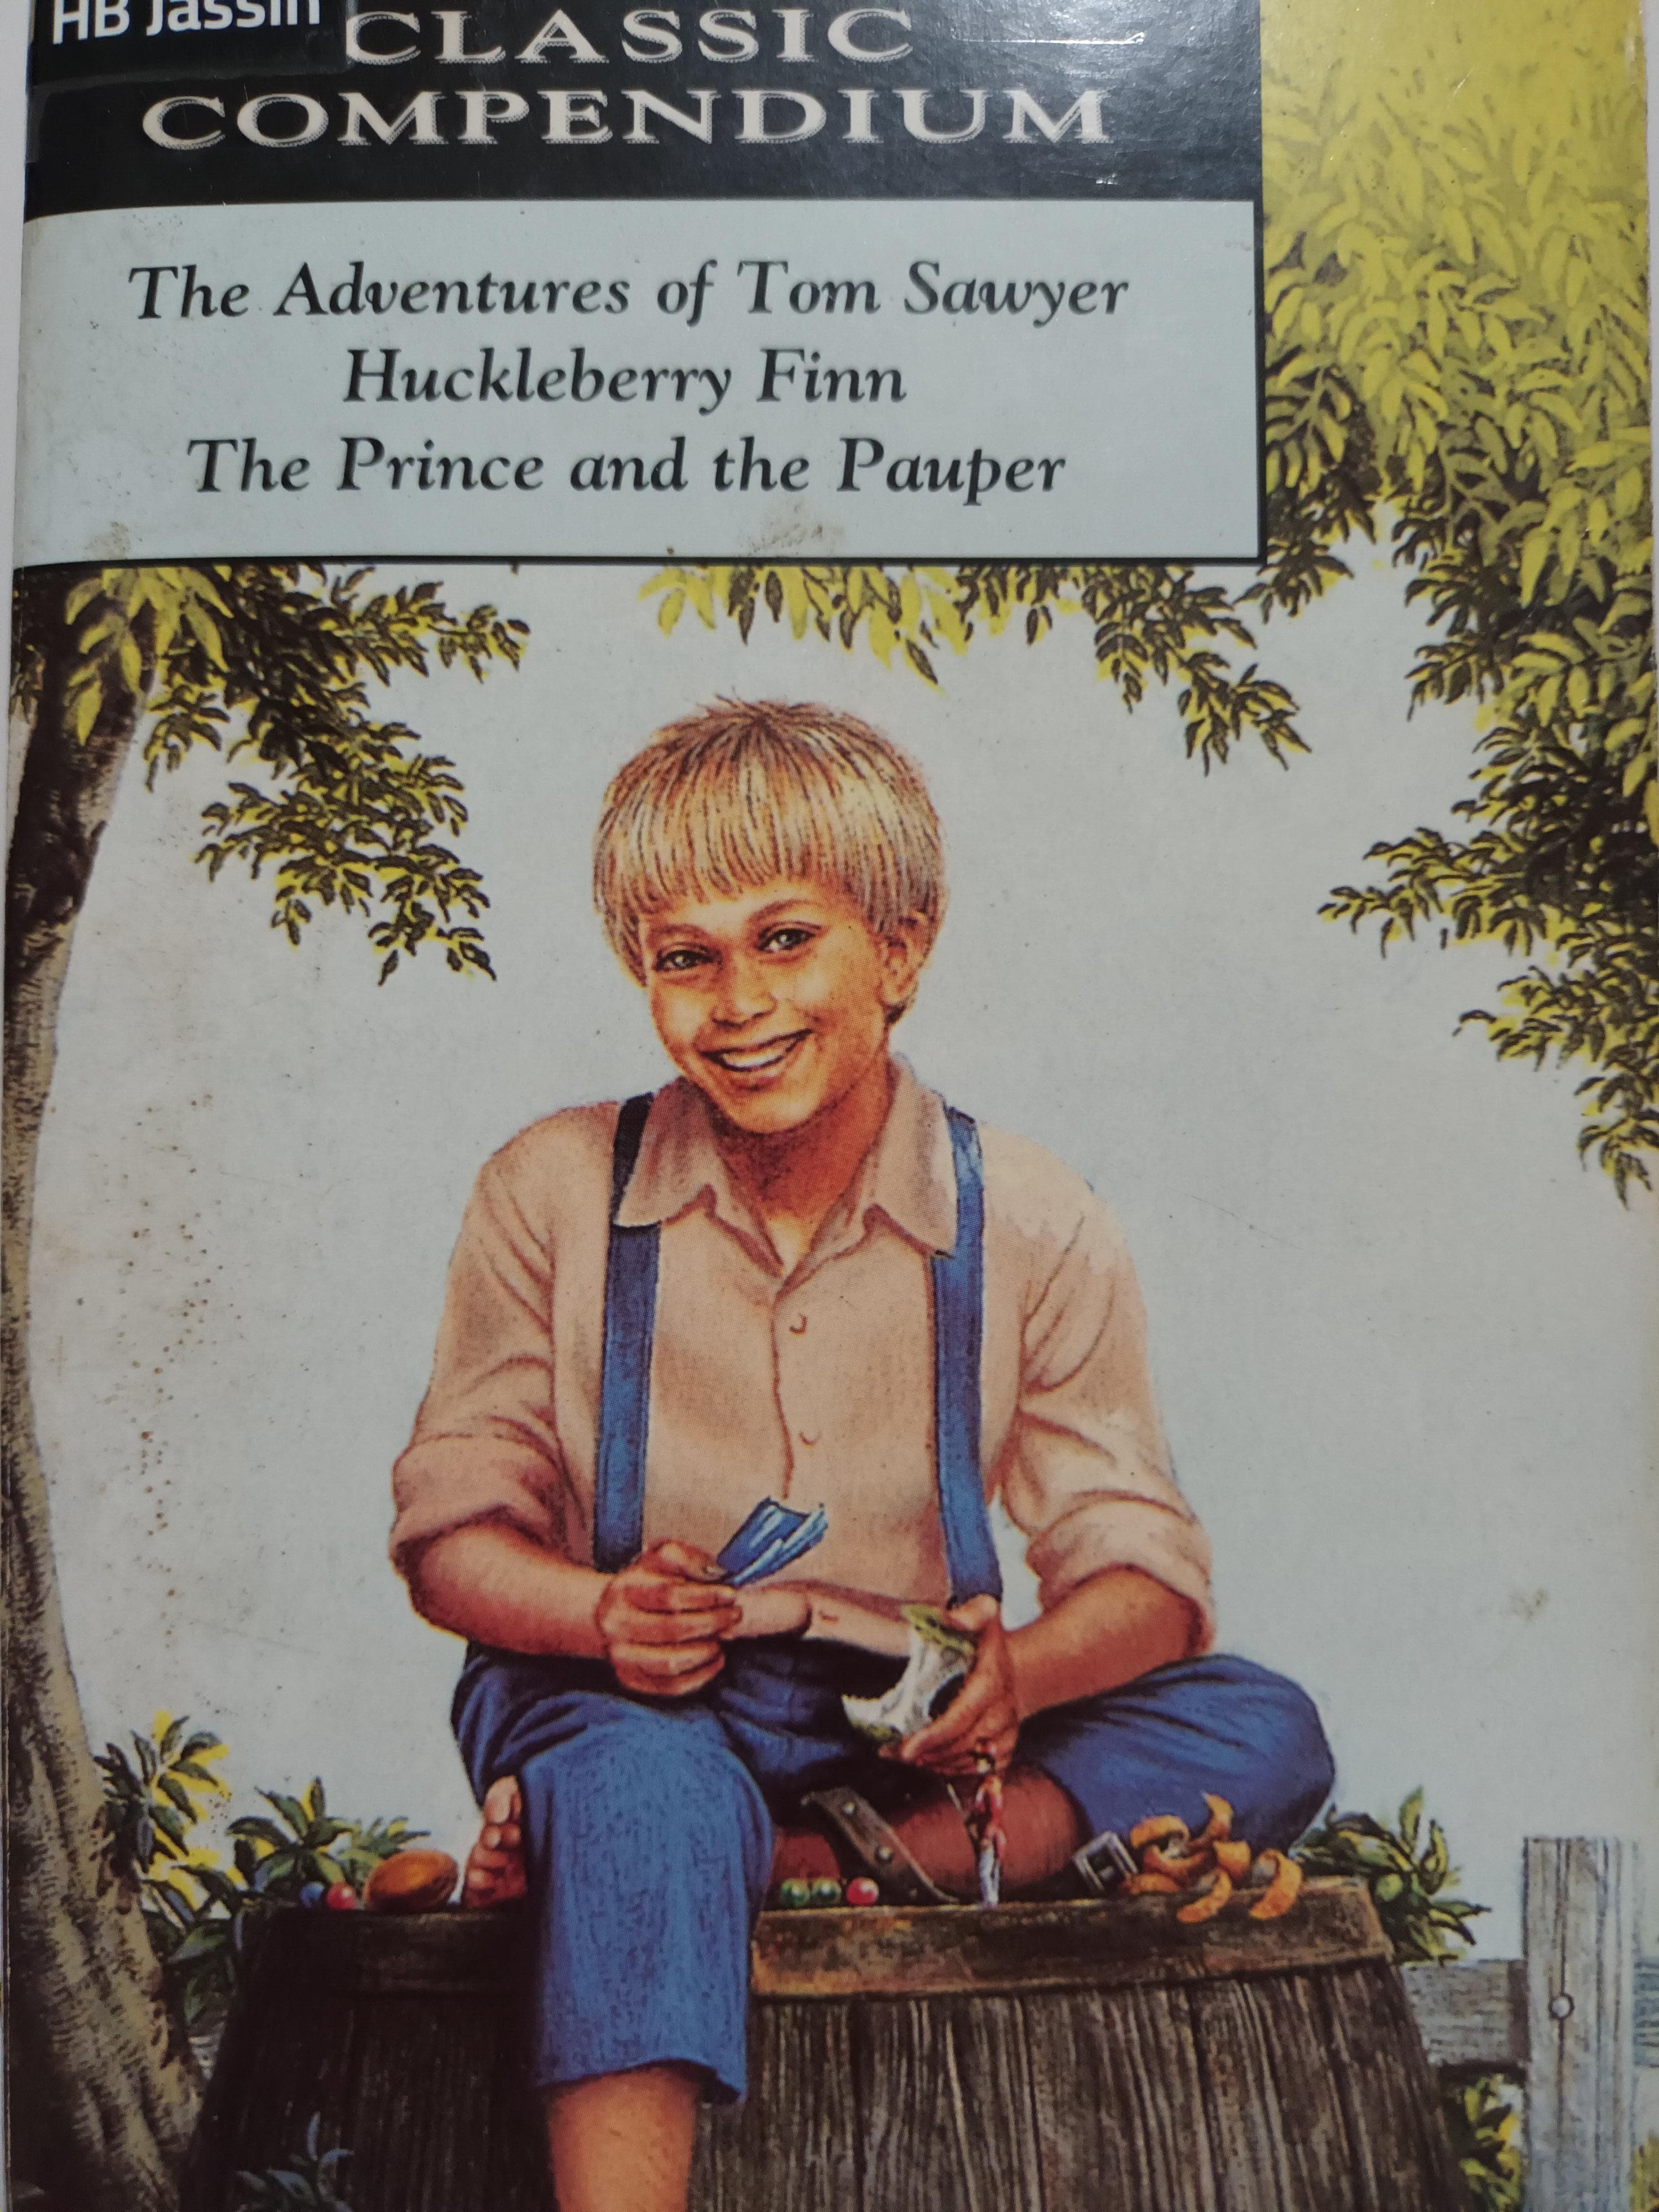 Children's classic compendium